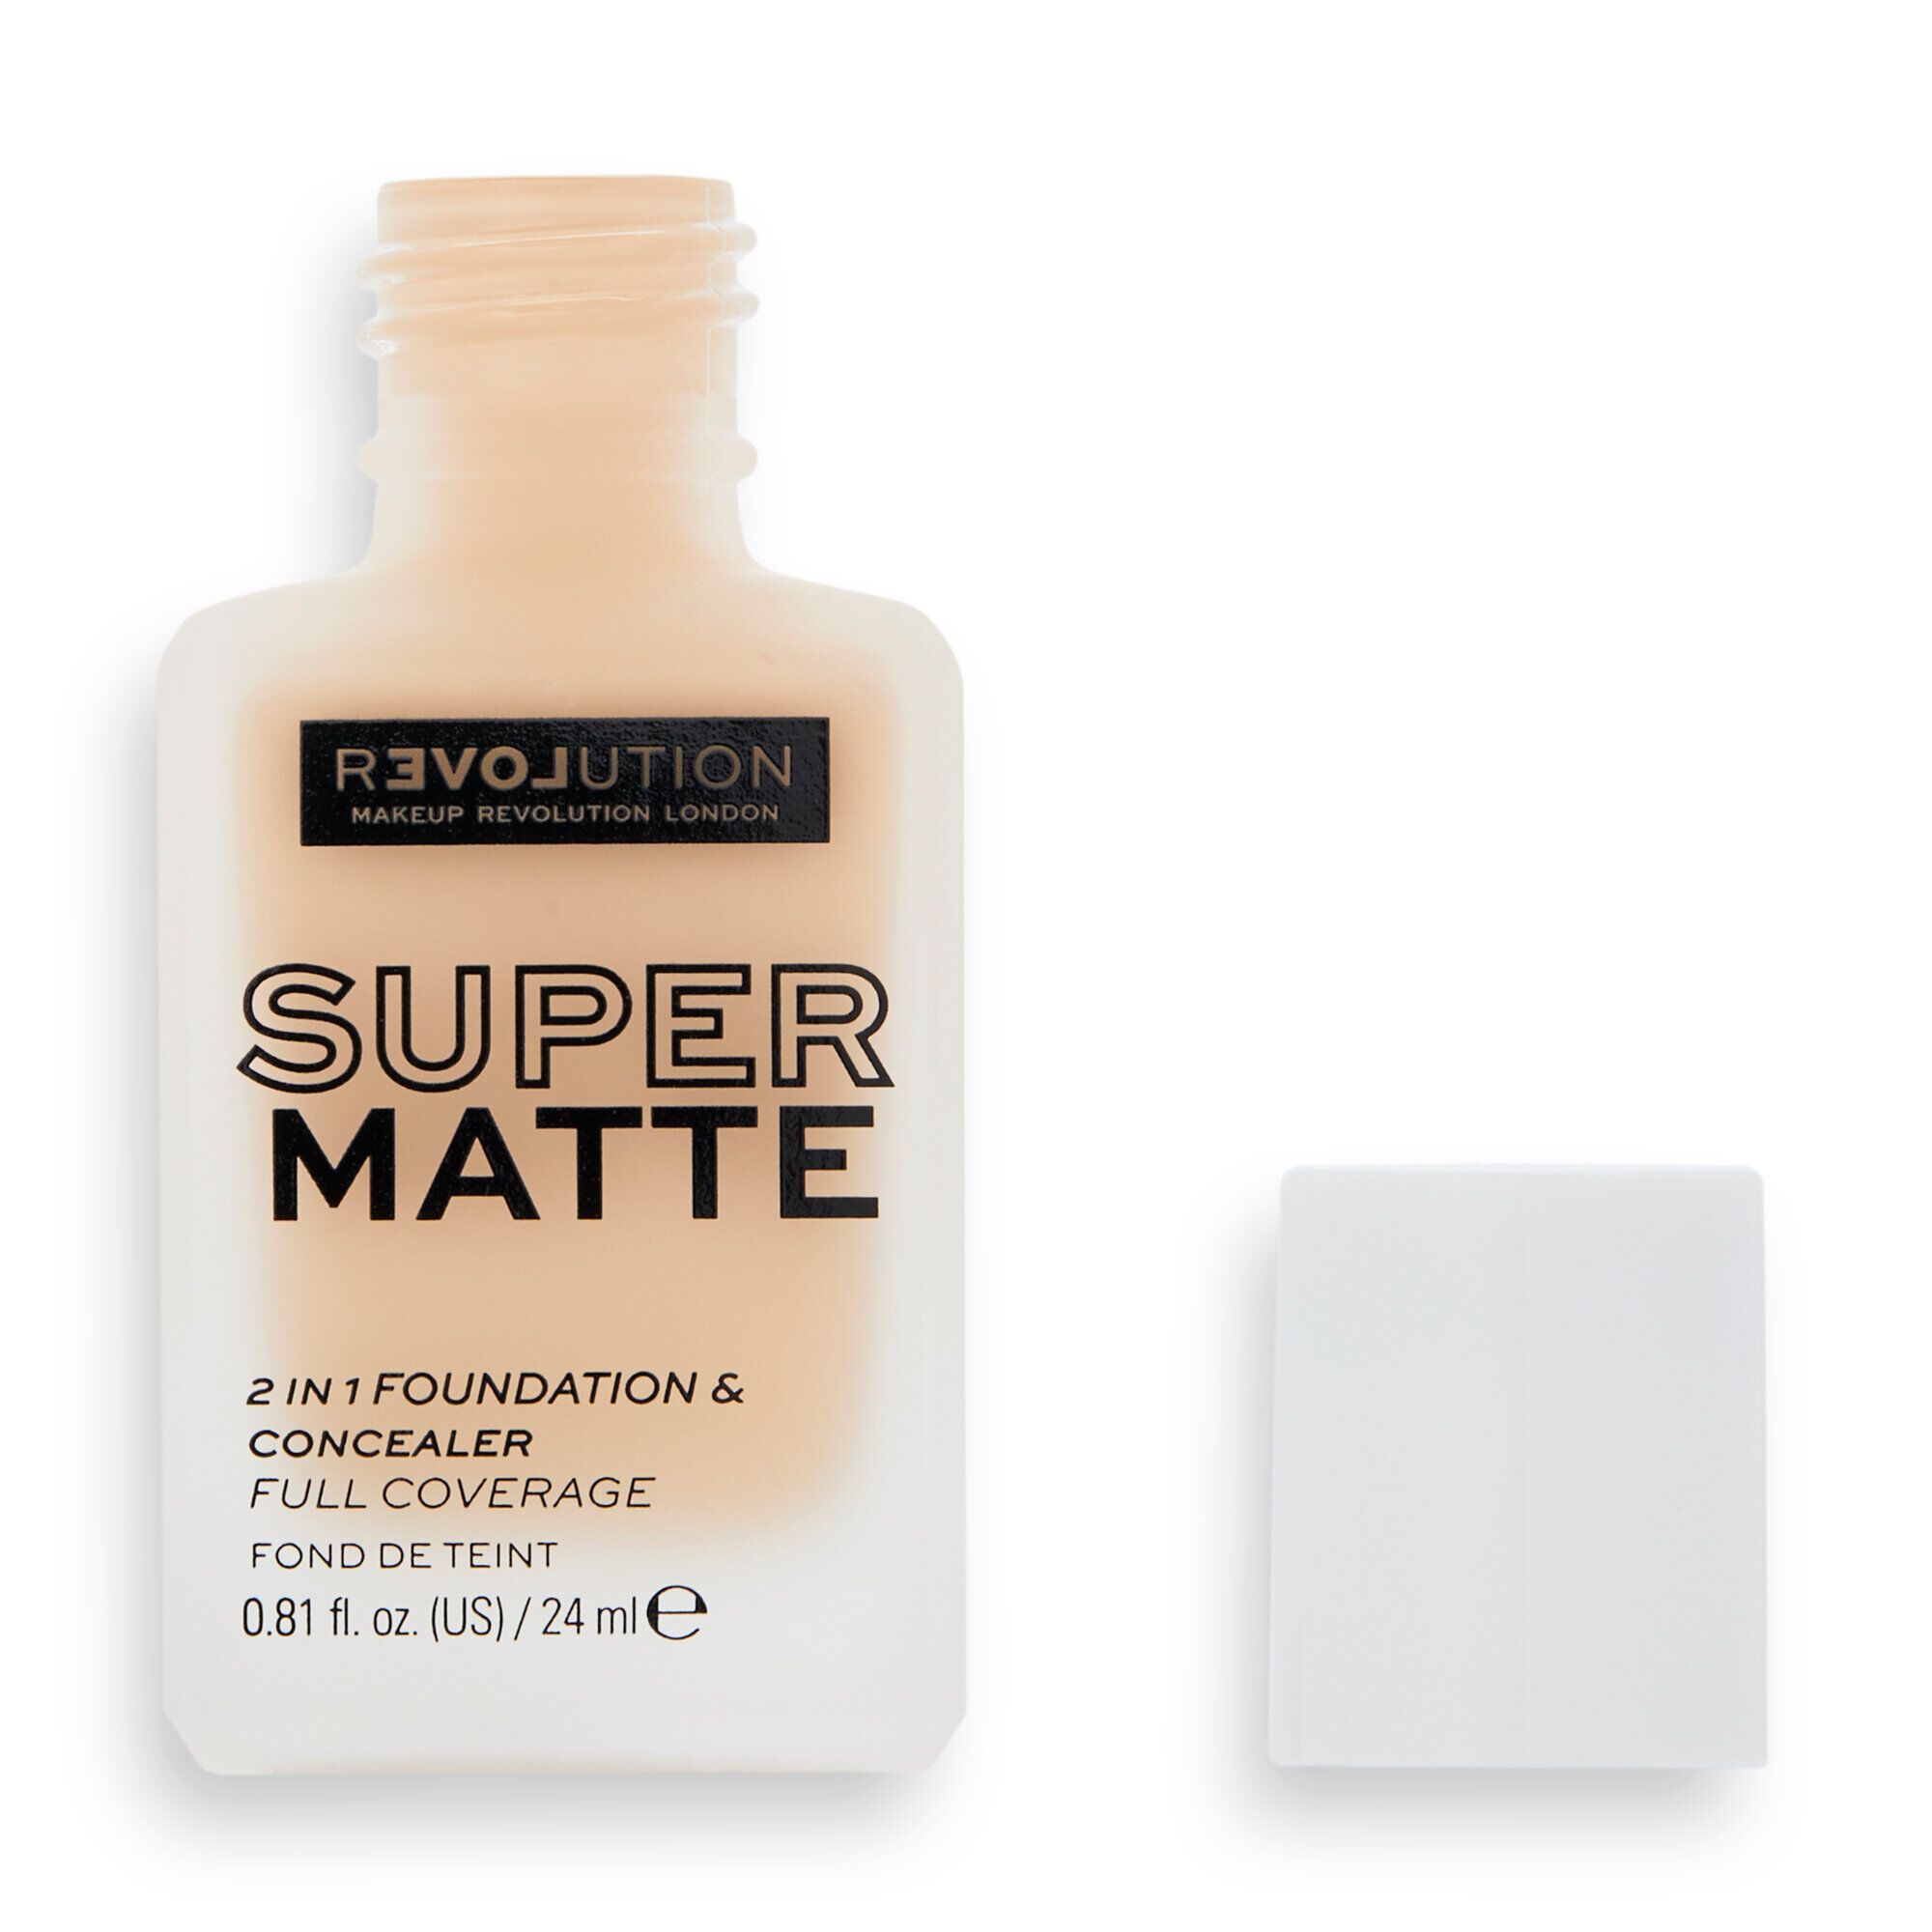 Super Matte 2In1 Foundation & Concealer